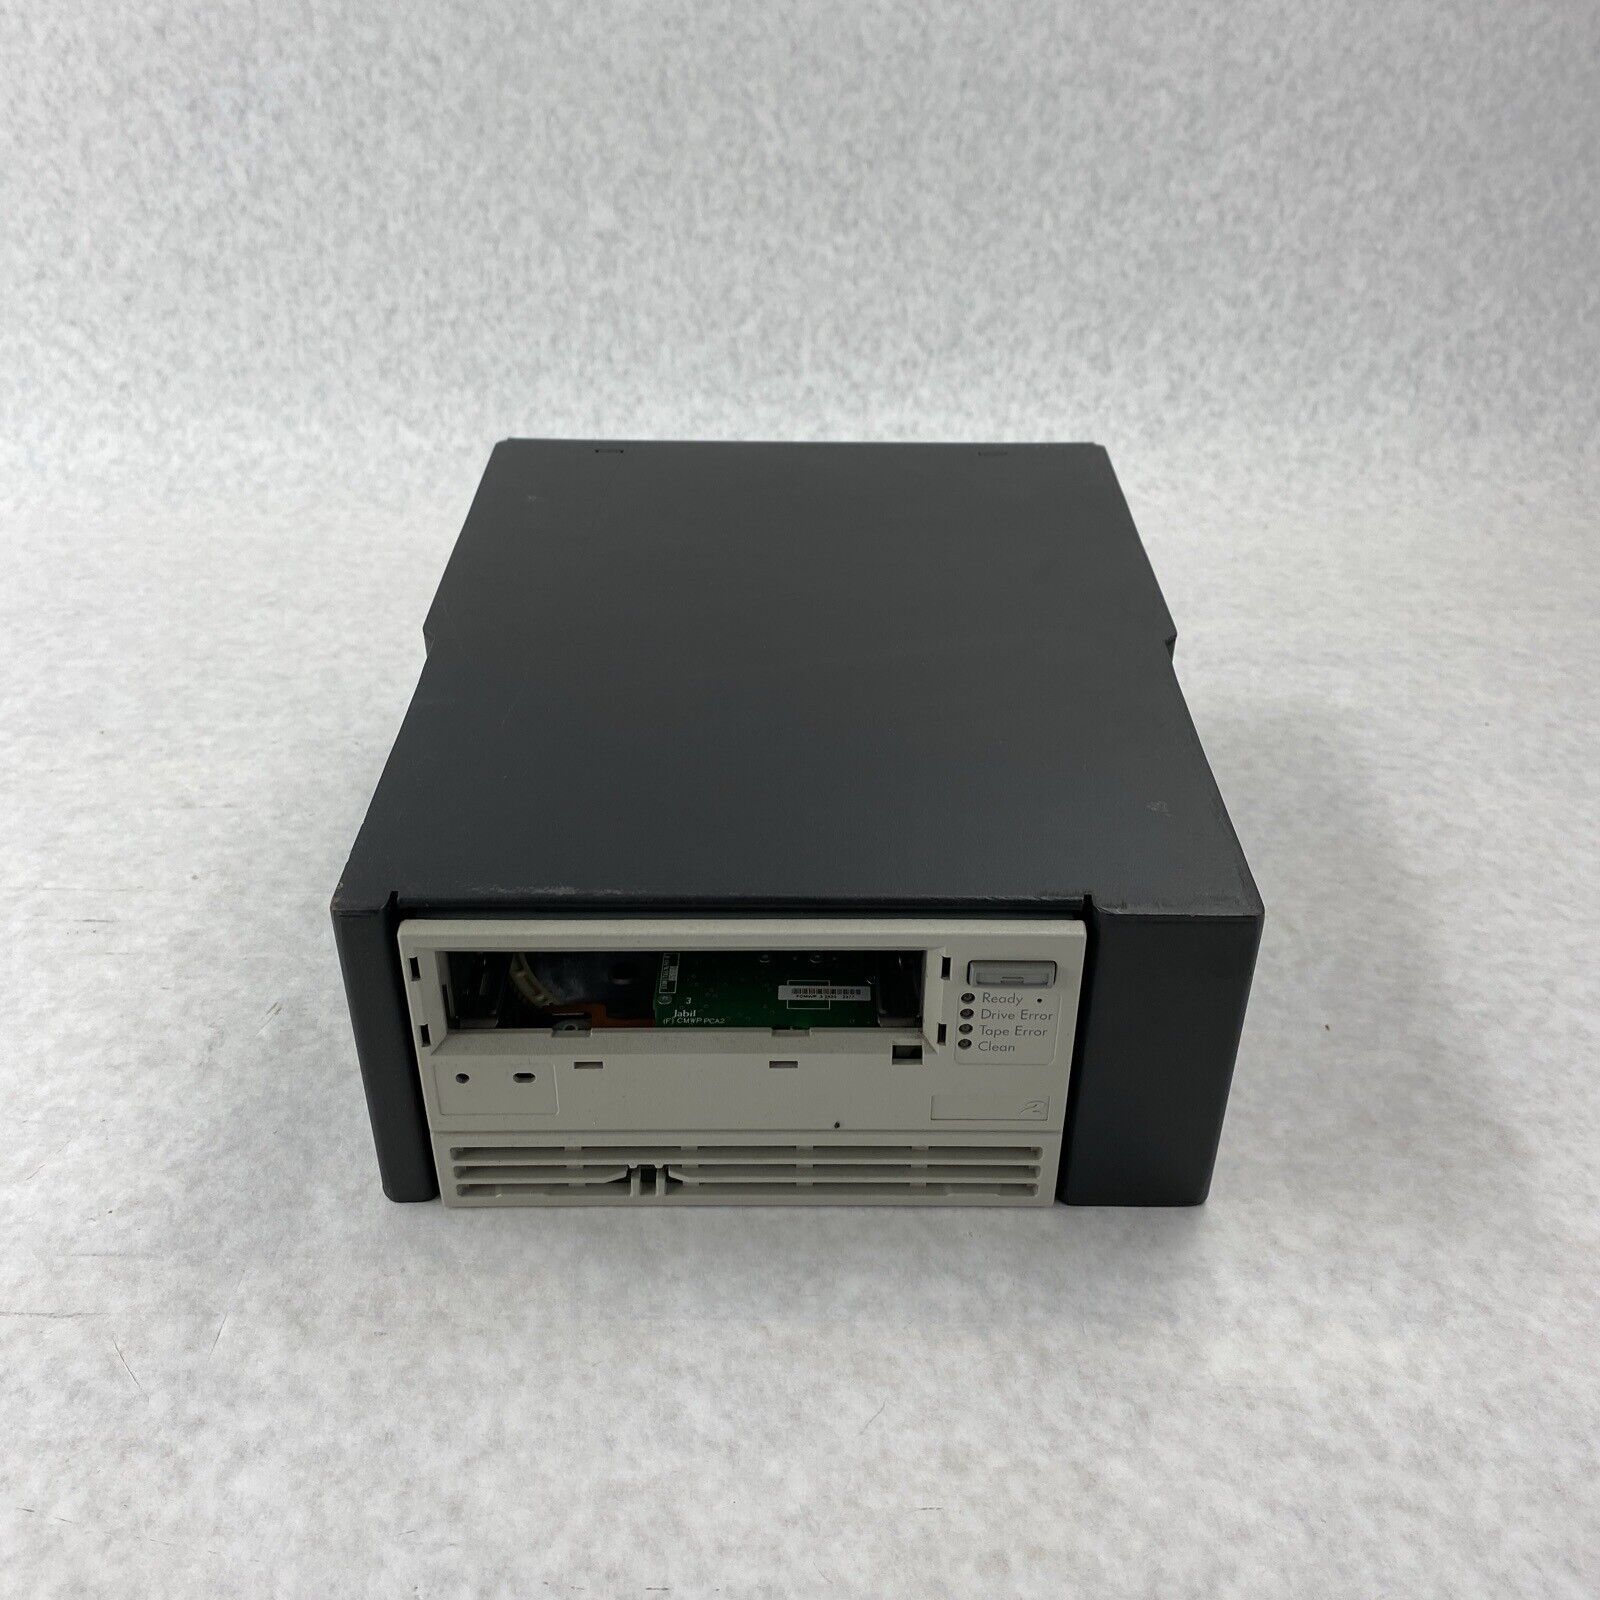 Ultrium LTO 2 Tape Drive 6430512-06 From Quantum P4000 Series